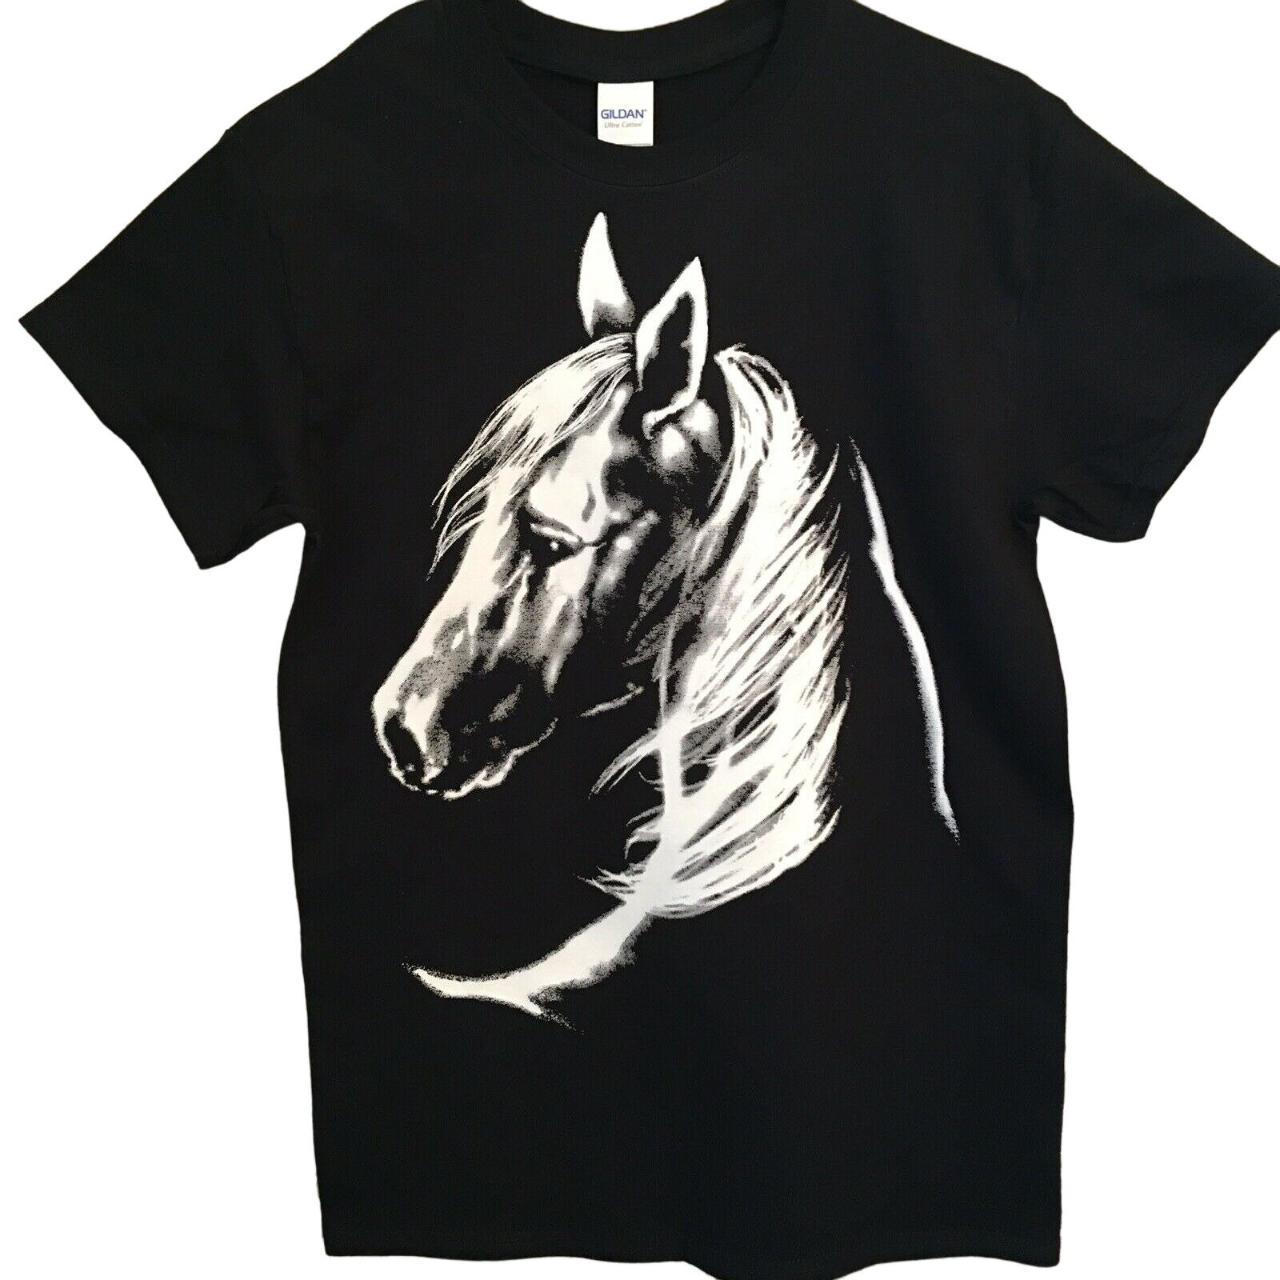 Horse head silhouette t shirt. Gildan Brand Size... - Depop